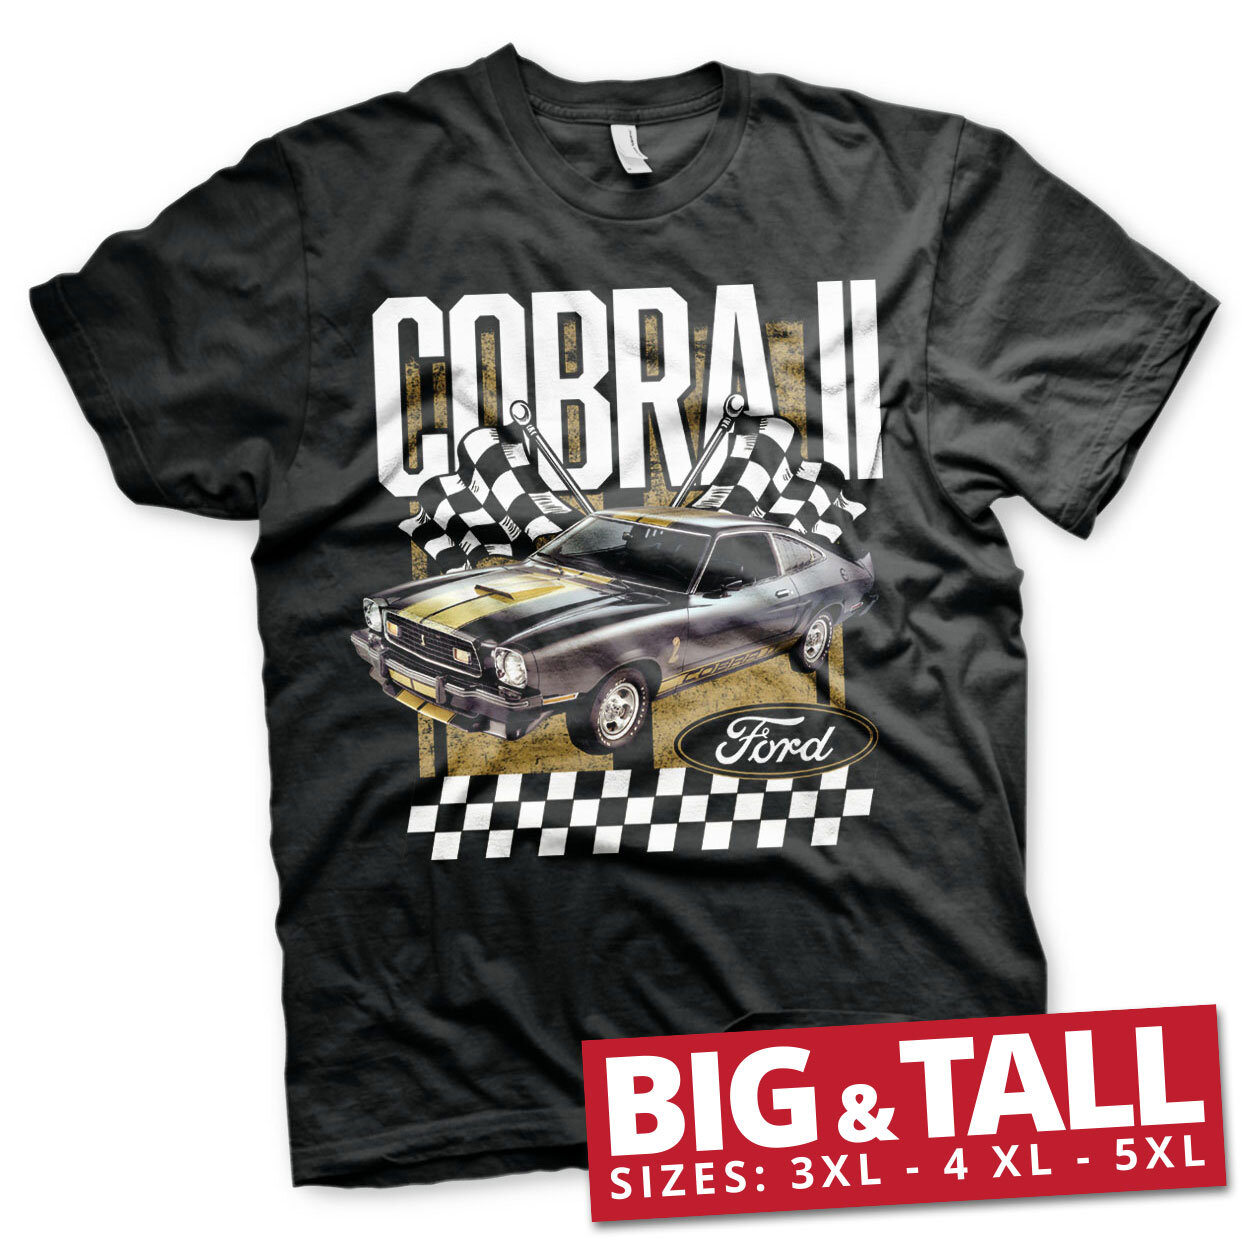 Ford Cobra II Big & Tall T-Shirt